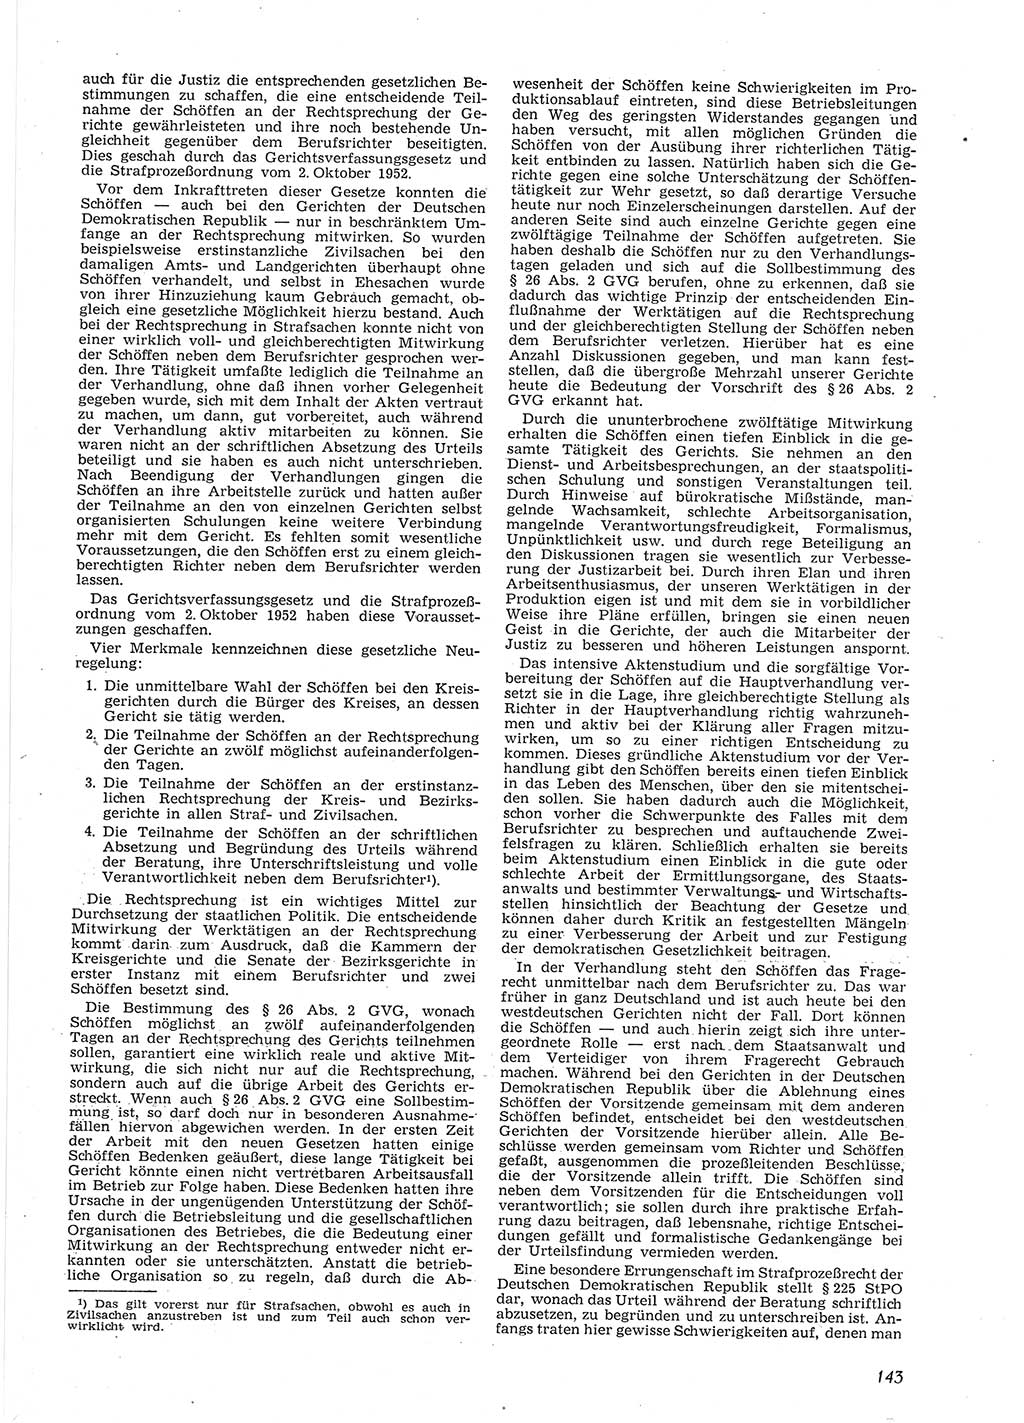 Neue Justiz (NJ), Zeitschrift für Recht und Rechtswissenschaft [Deutsche Demokratische Republik (DDR)], 9. Jahrgang 1955, Seite 143 (NJ DDR 1955, S. 143)